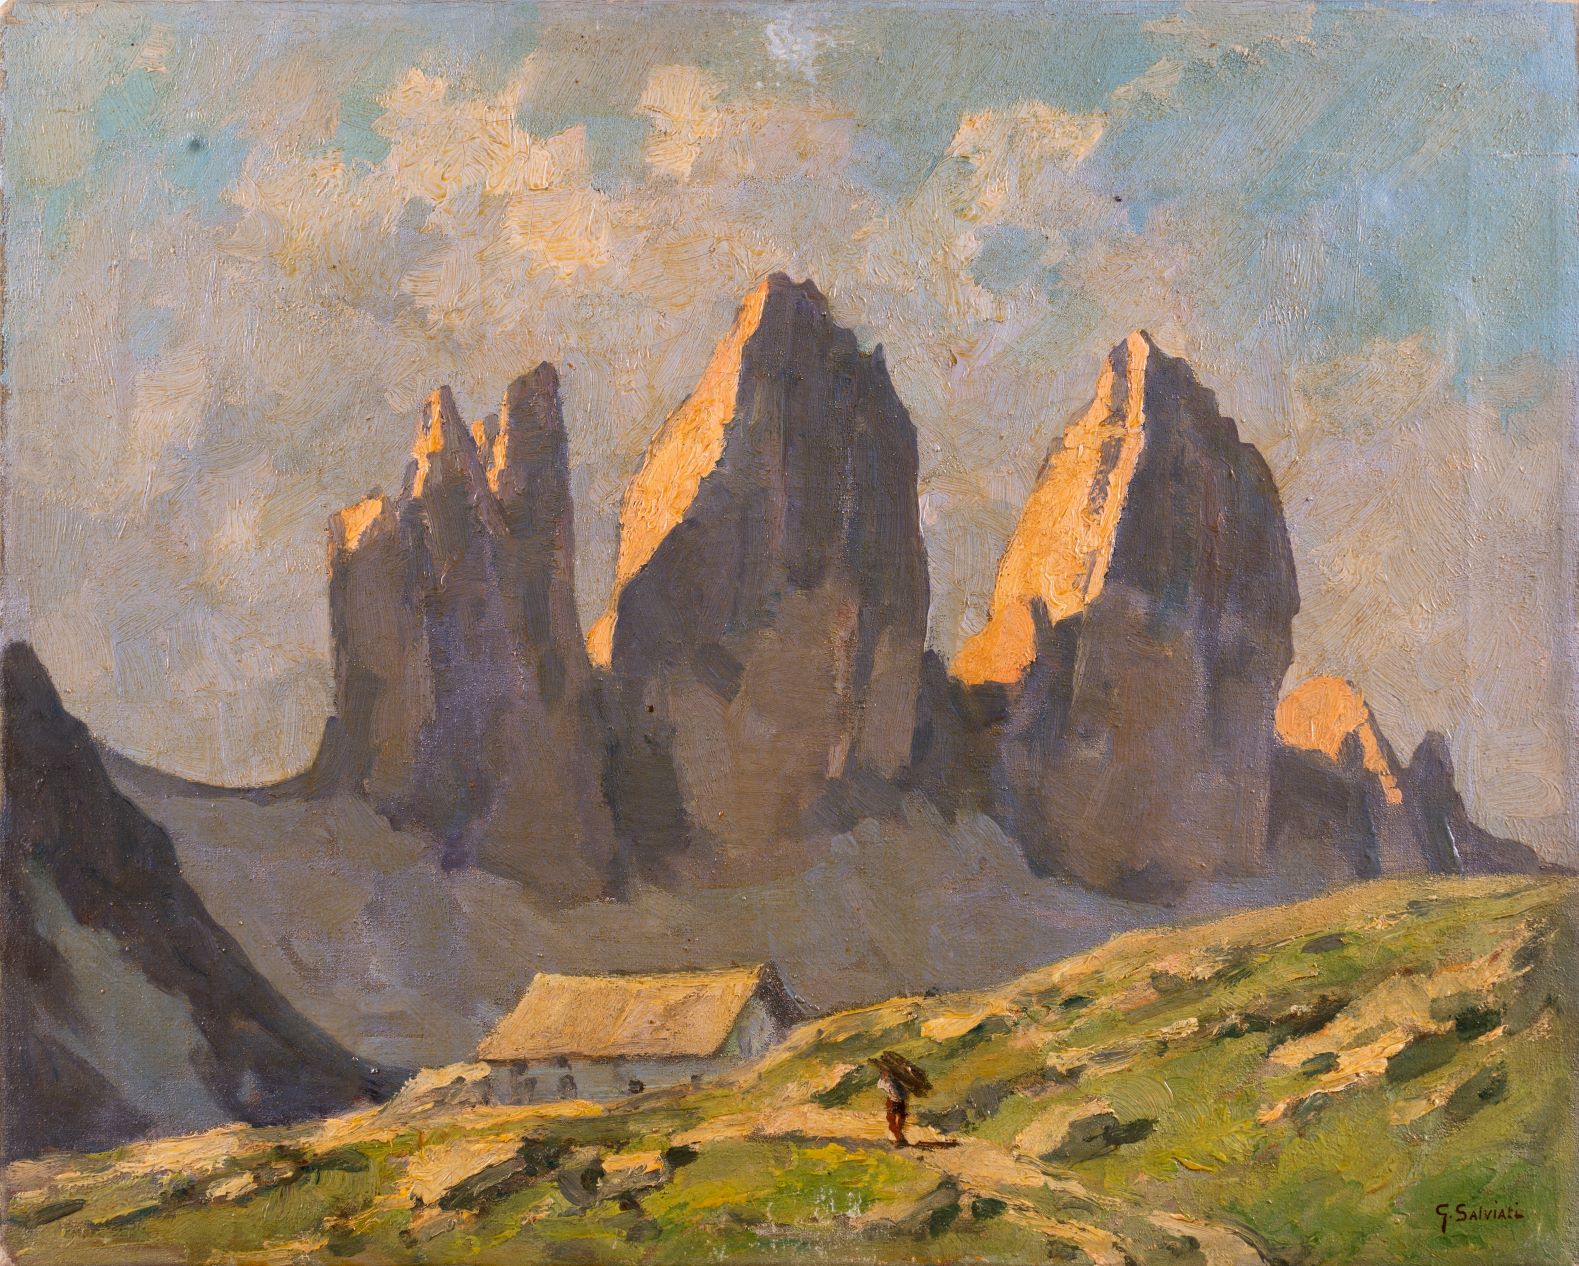 Cattedrali della terra con cancelli di roccia. Il Racconto (in pittura) della Montagna, a Conegliano